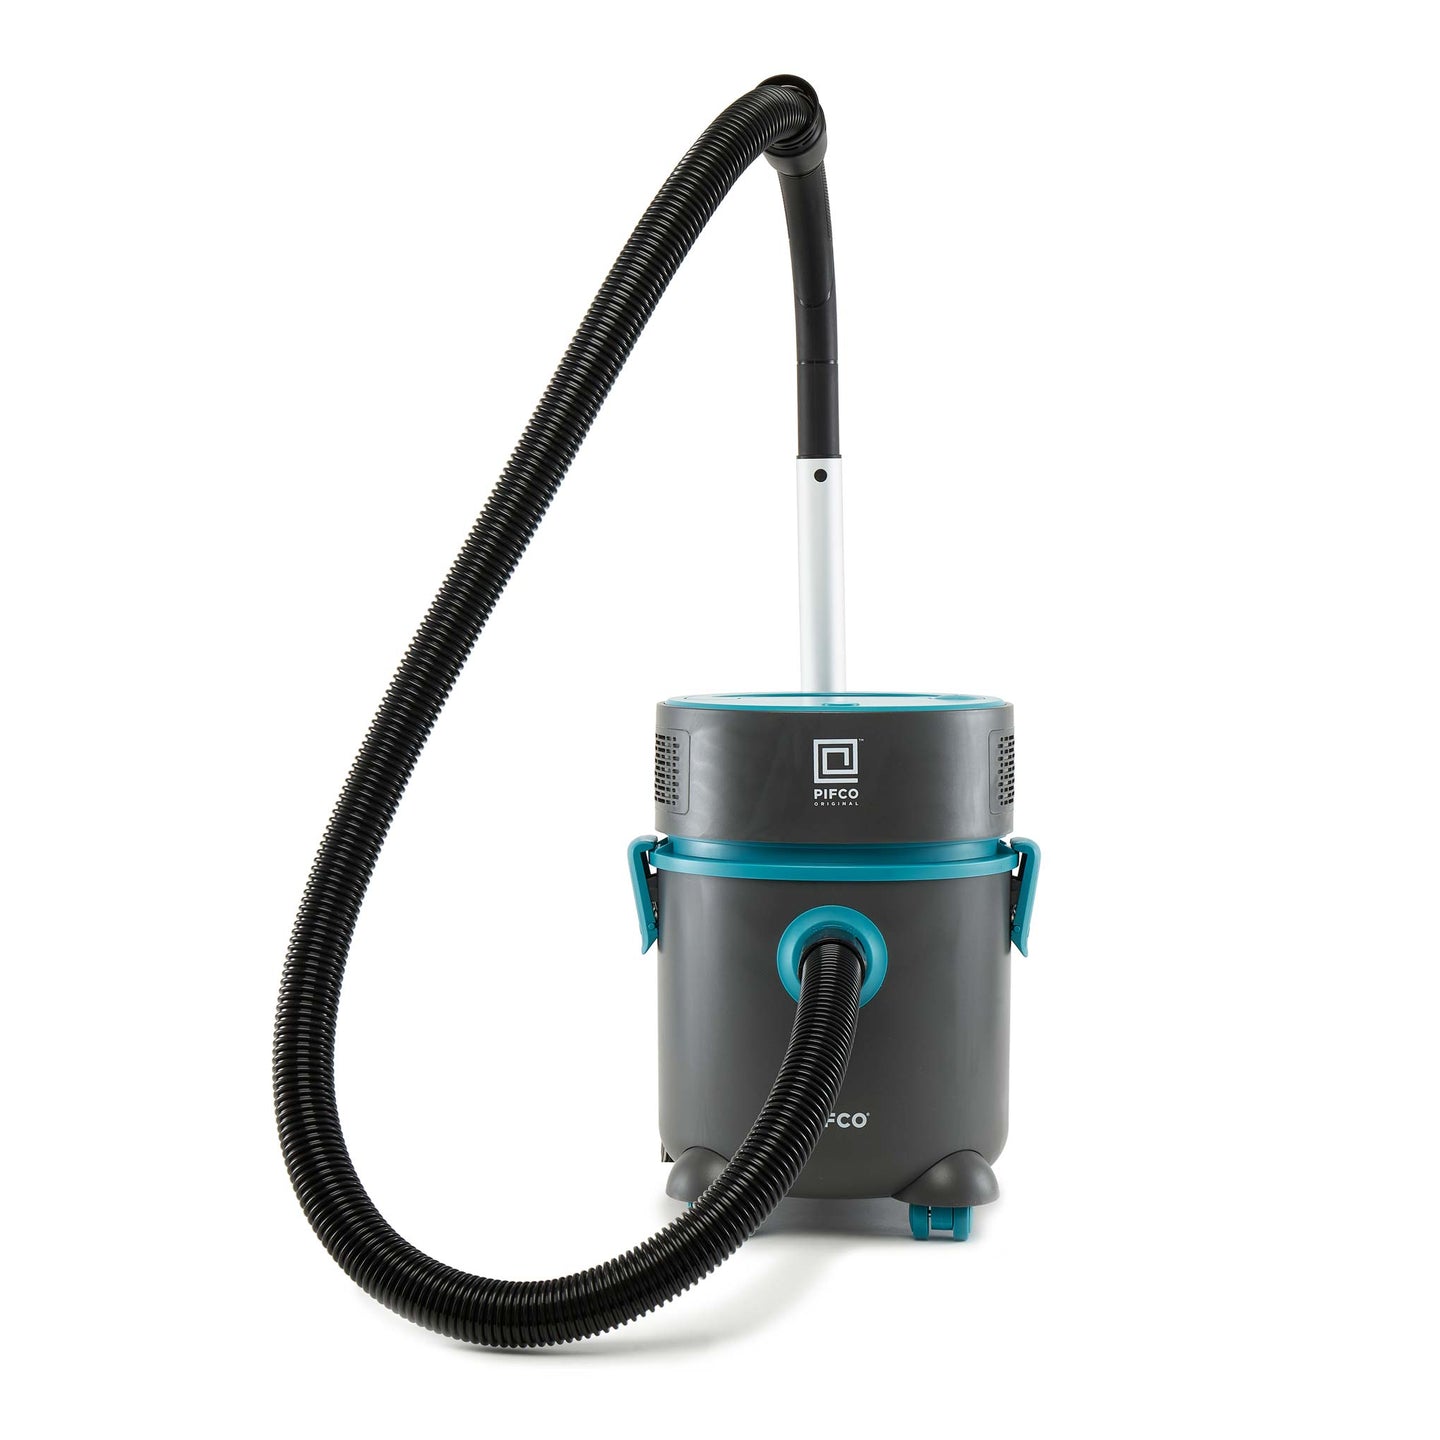 PIFCO Pro 8L Bagless Vacuum Cleaner